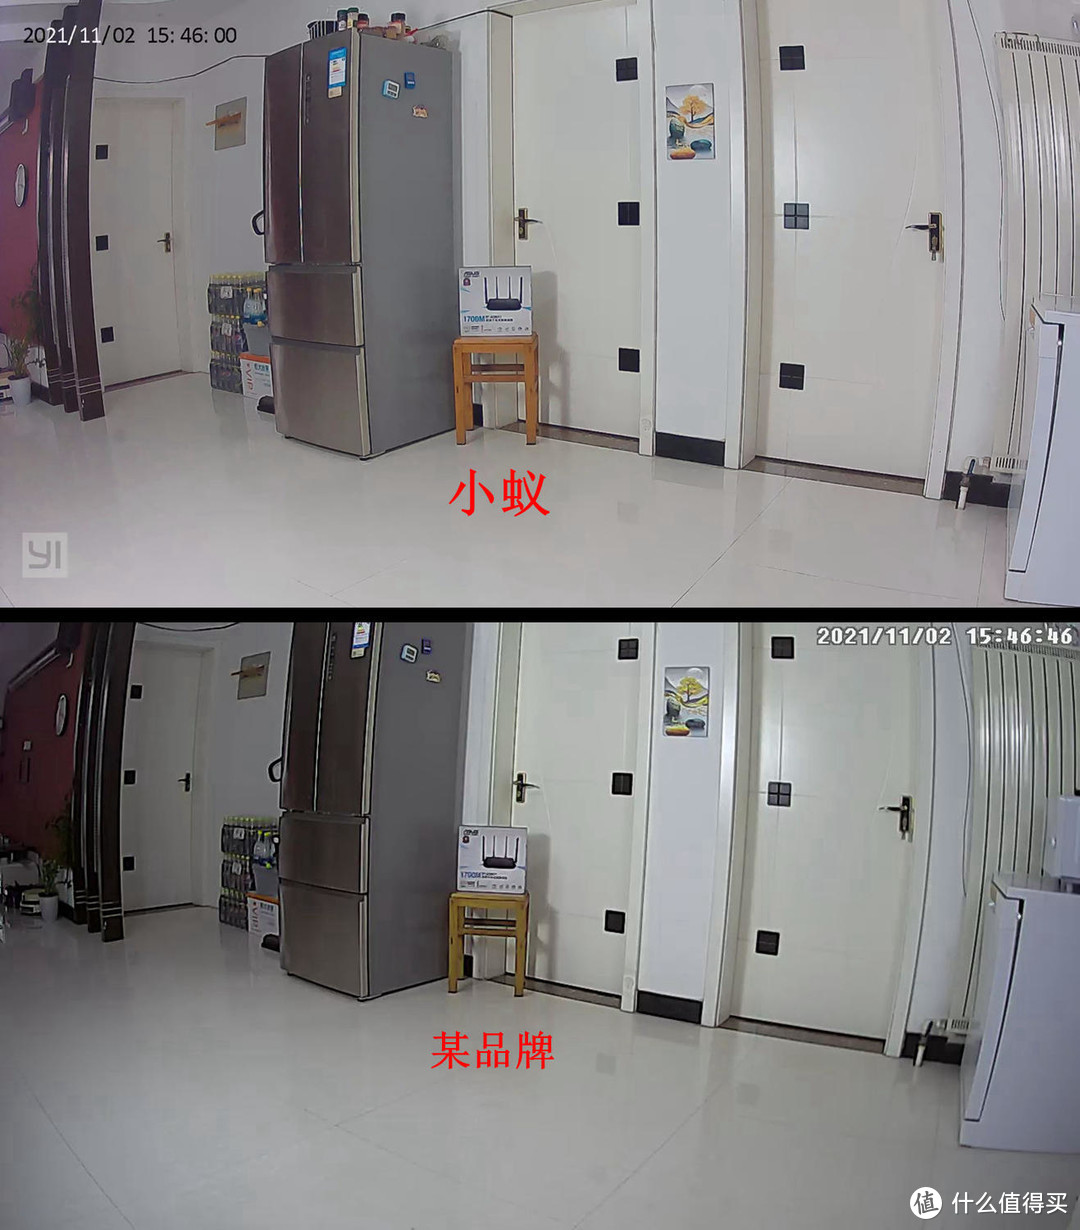 物理遮蔽保隐私，全景侦测无遗漏：yi小蚁智能摄像机4pro H51体验